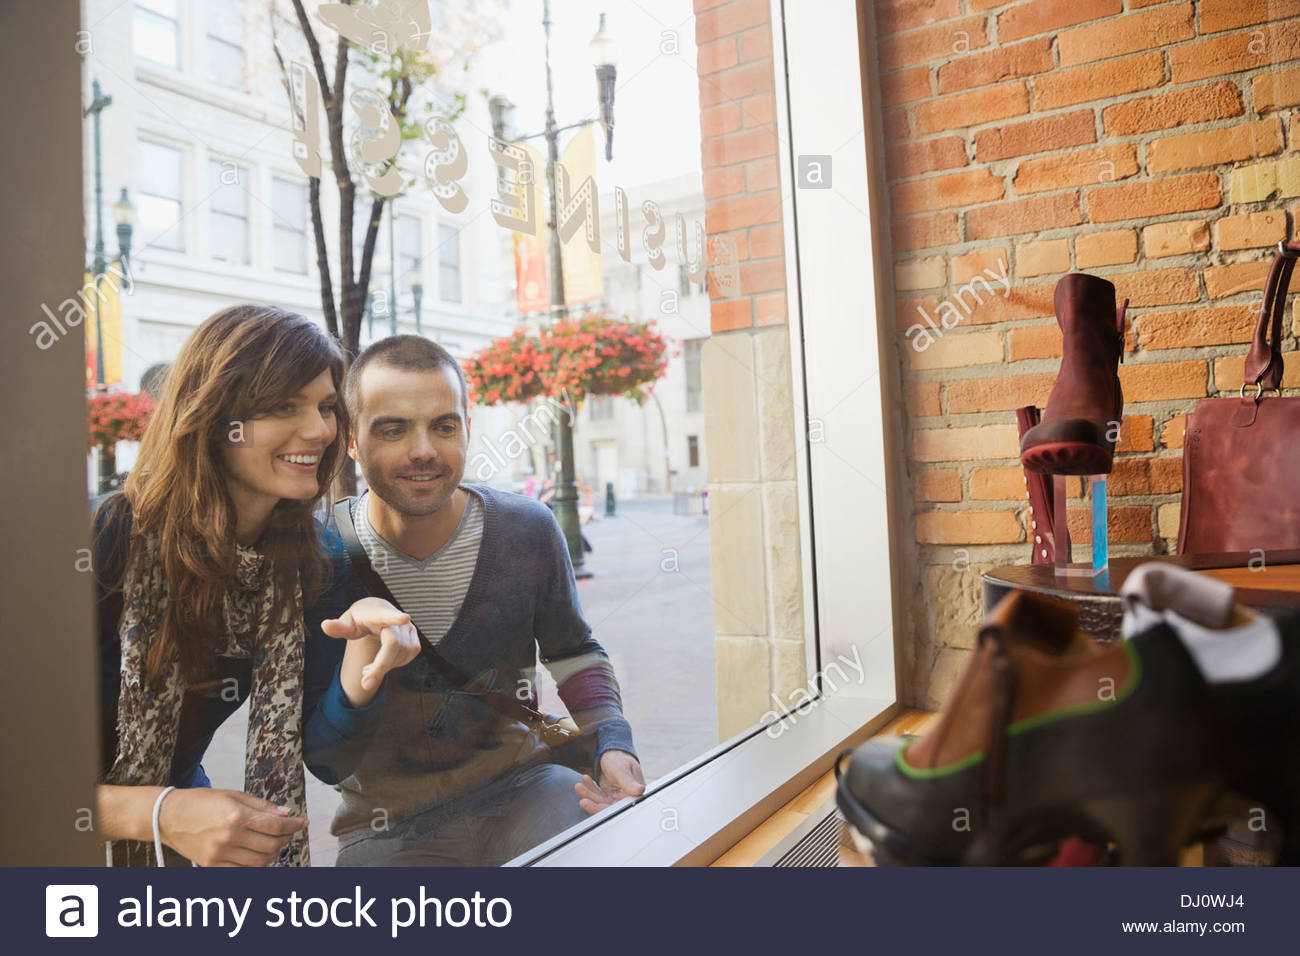 Smiling couple window shopping Stock Photo